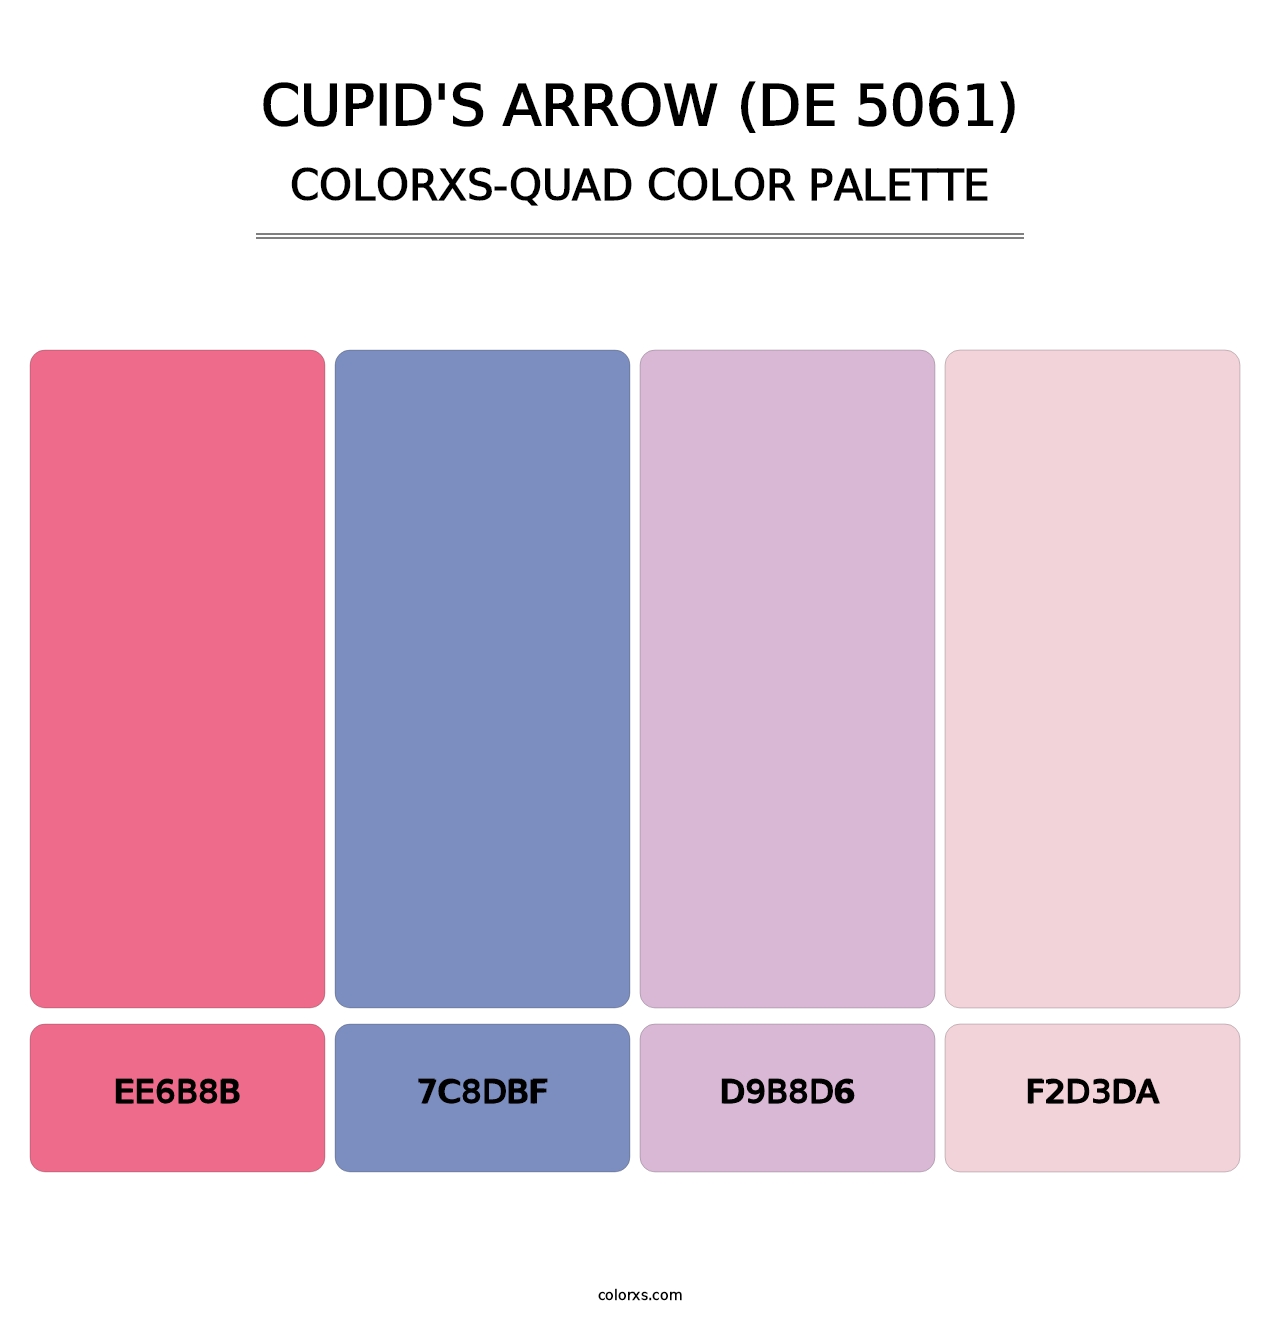 Cupid's Arrow (DE 5061) - Colorxs Quad Palette